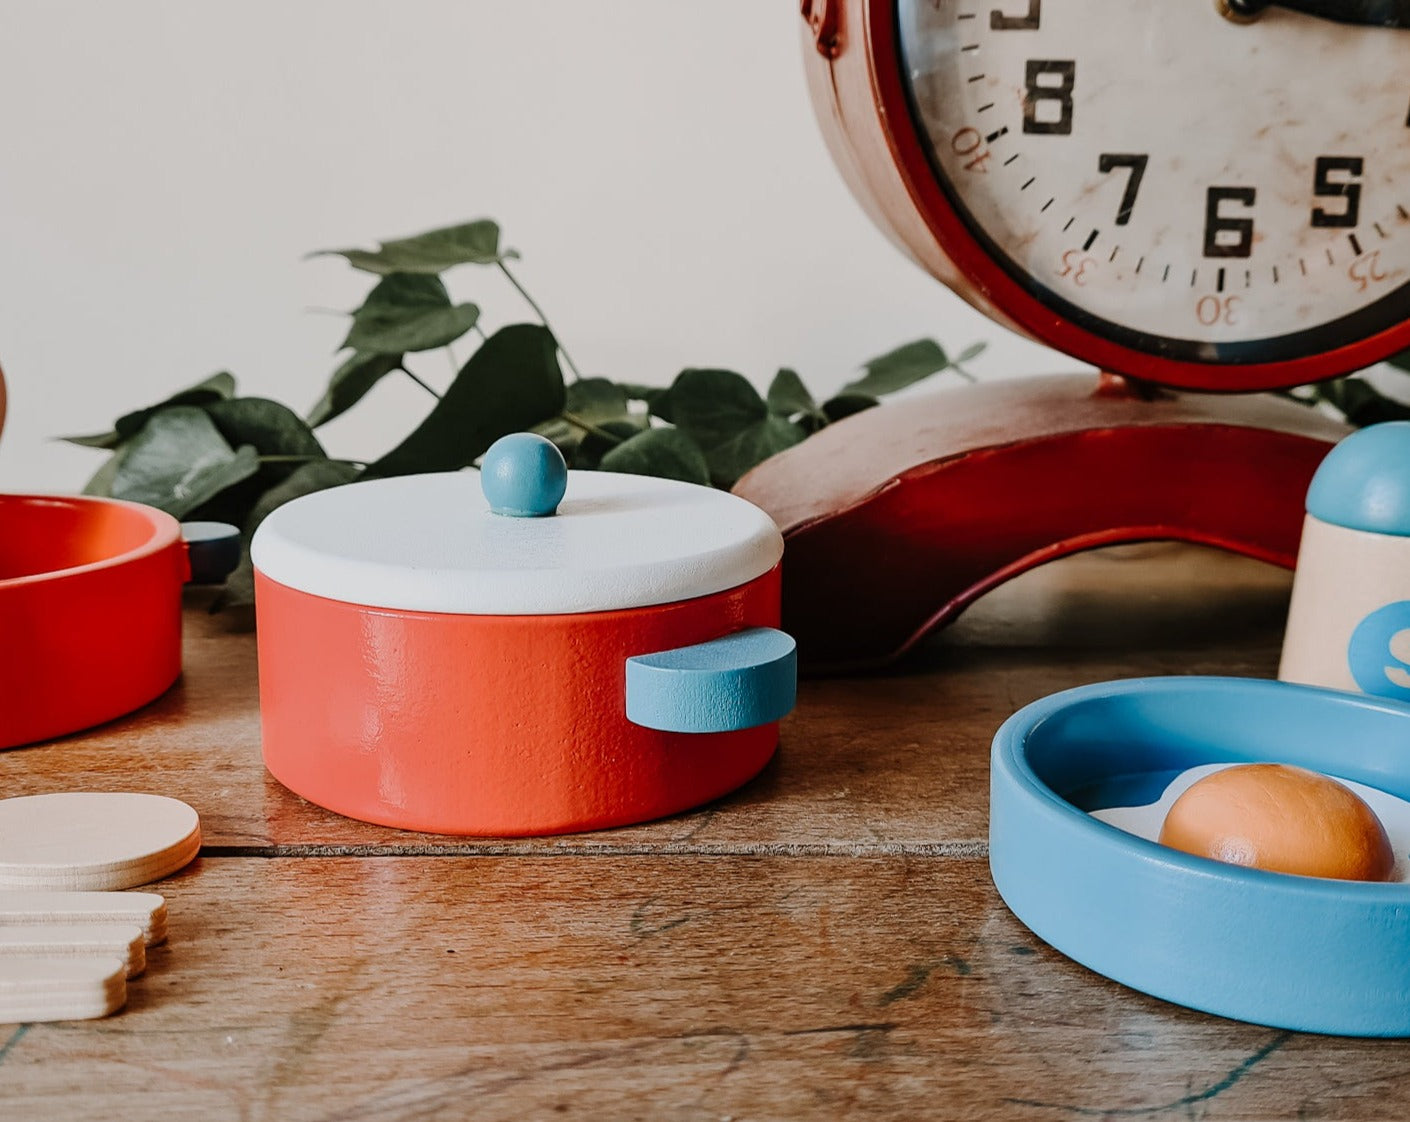 egmont toys set de cuisine en bois casseroles, poêle jeu d'imitation jeu de rôle enfant